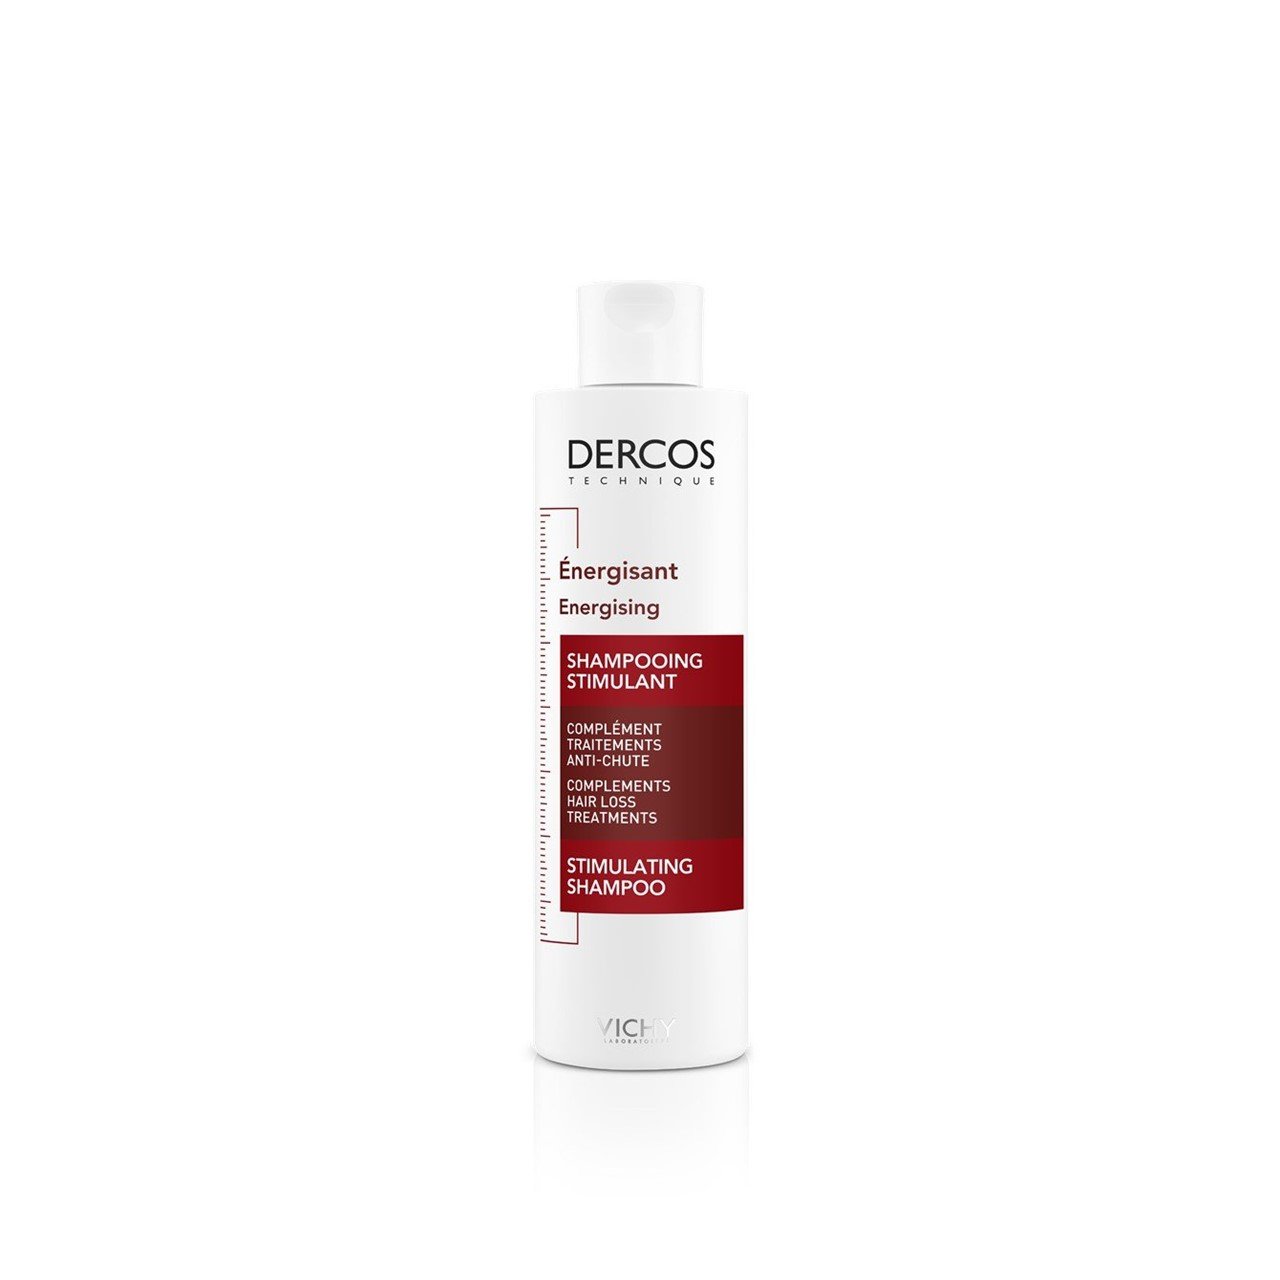 Vichy Dercos Energising Stimulating Shampoo 200ml (6.76fl oz)